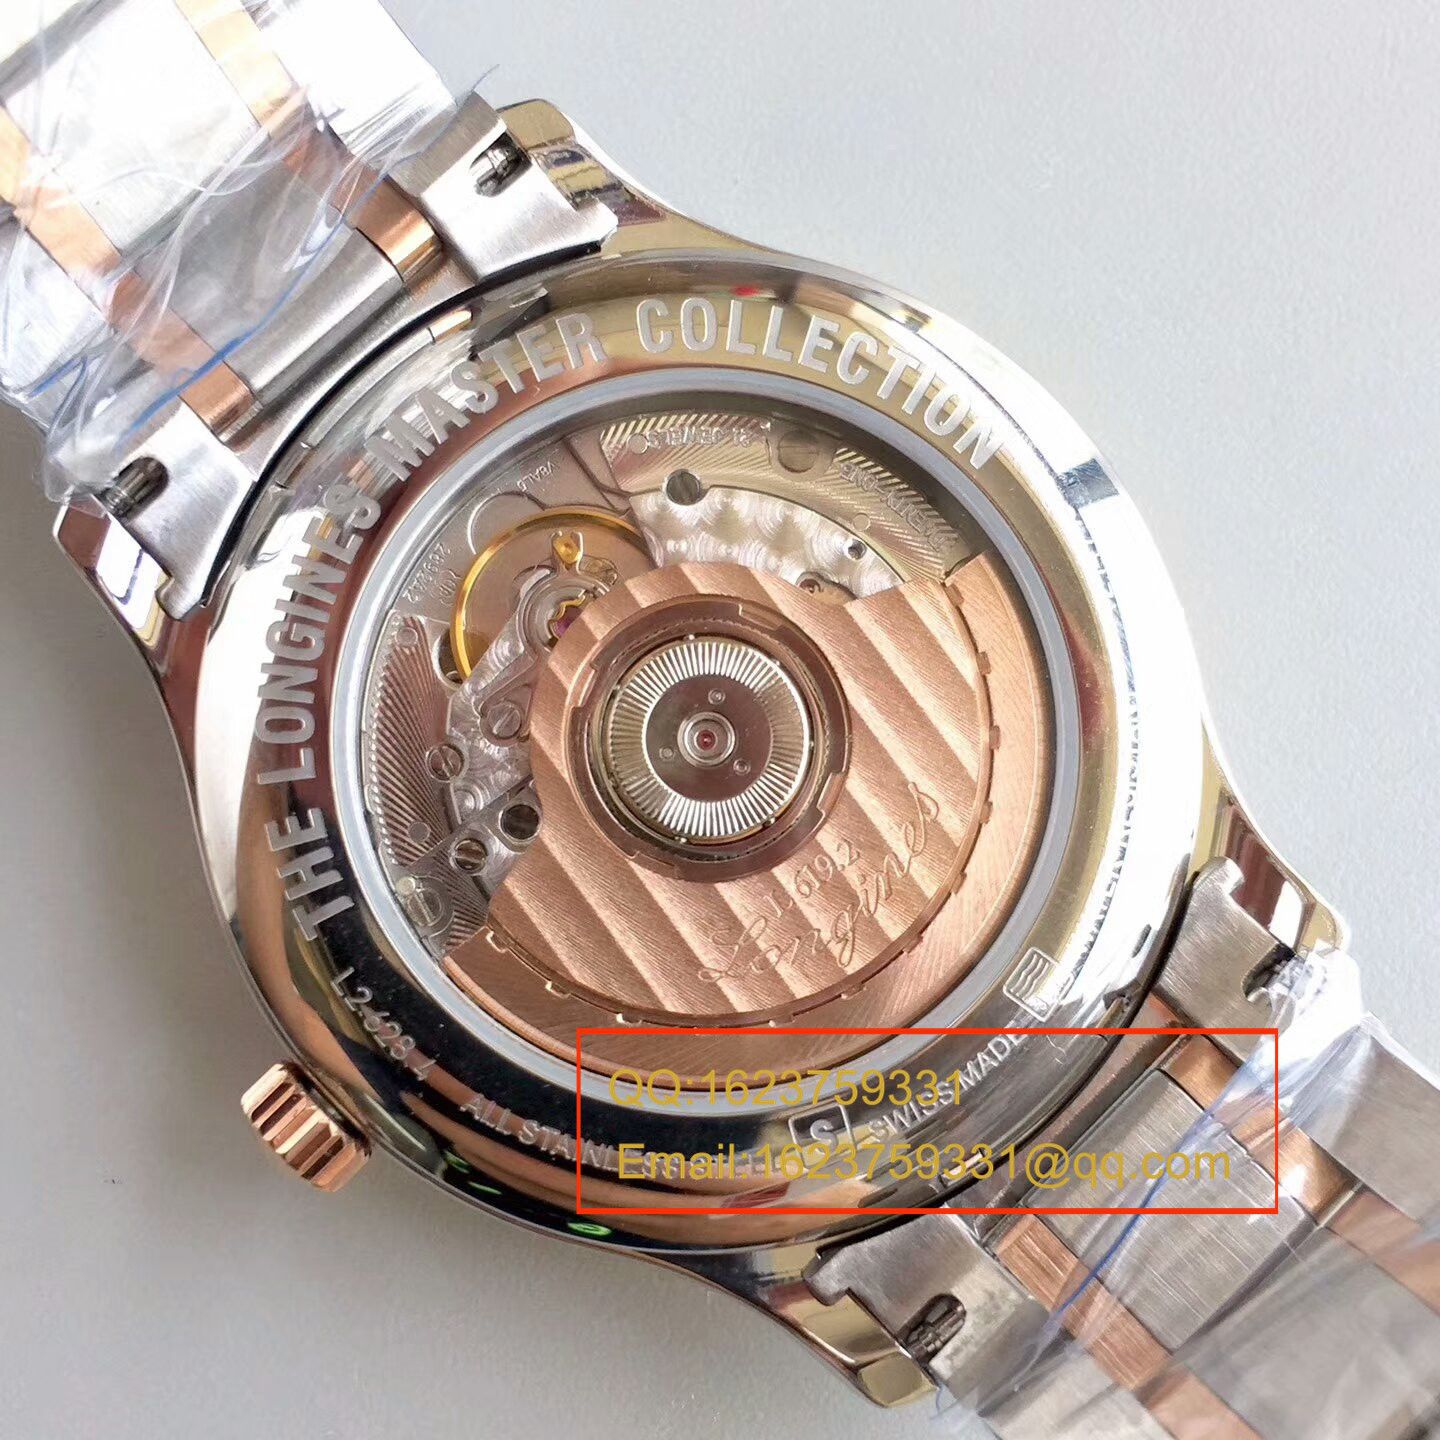 【KZ一比一顶级复刻手表】浪琴名匠系列L2.628.8.78.3间玫瑰金钢带版本腕表 